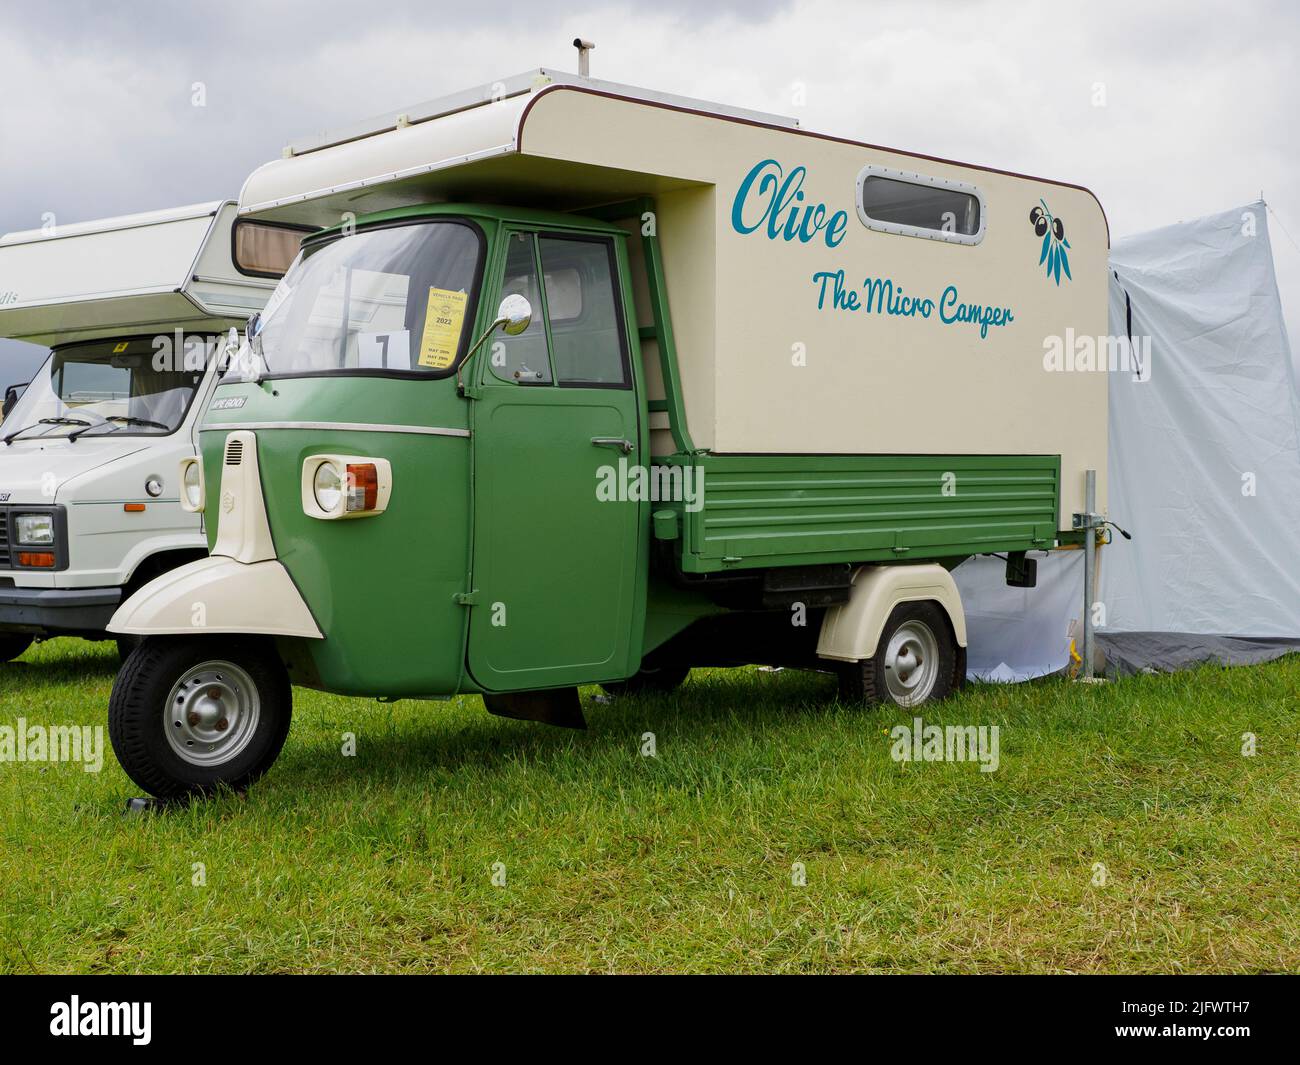 Piaggio Ape micro campervan in mostra al Launceston Steam & Vintage Rally, Cornovaglia, Regno Unito Foto Stock